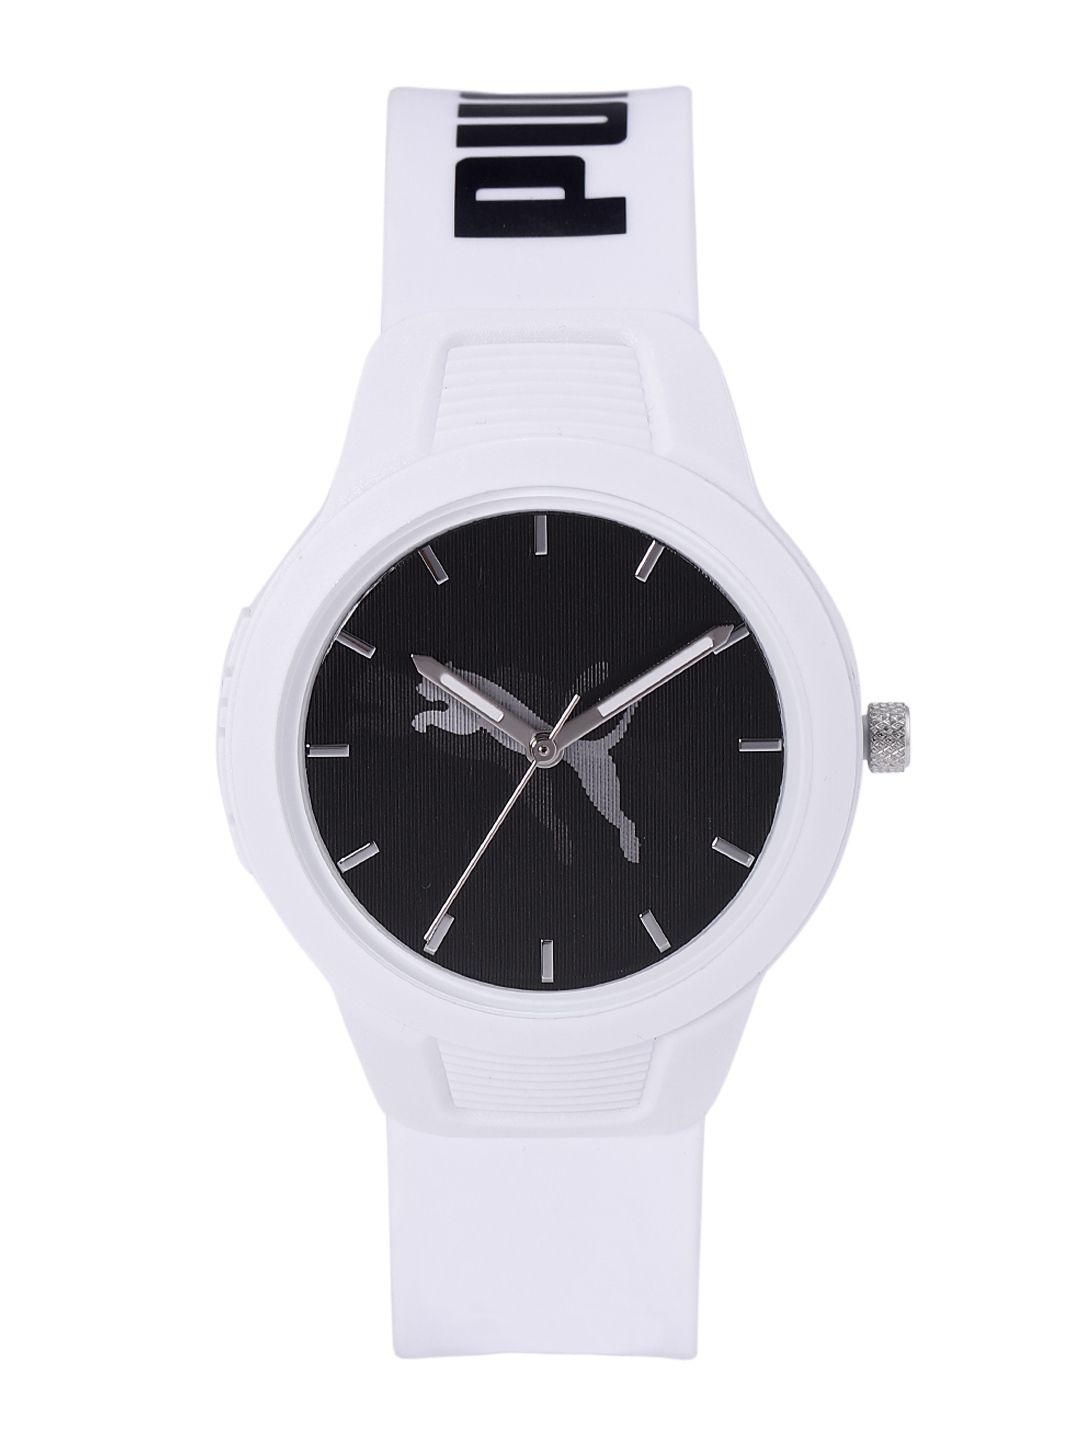 puma-women-black-dial-&-white-straps-analogue-watch